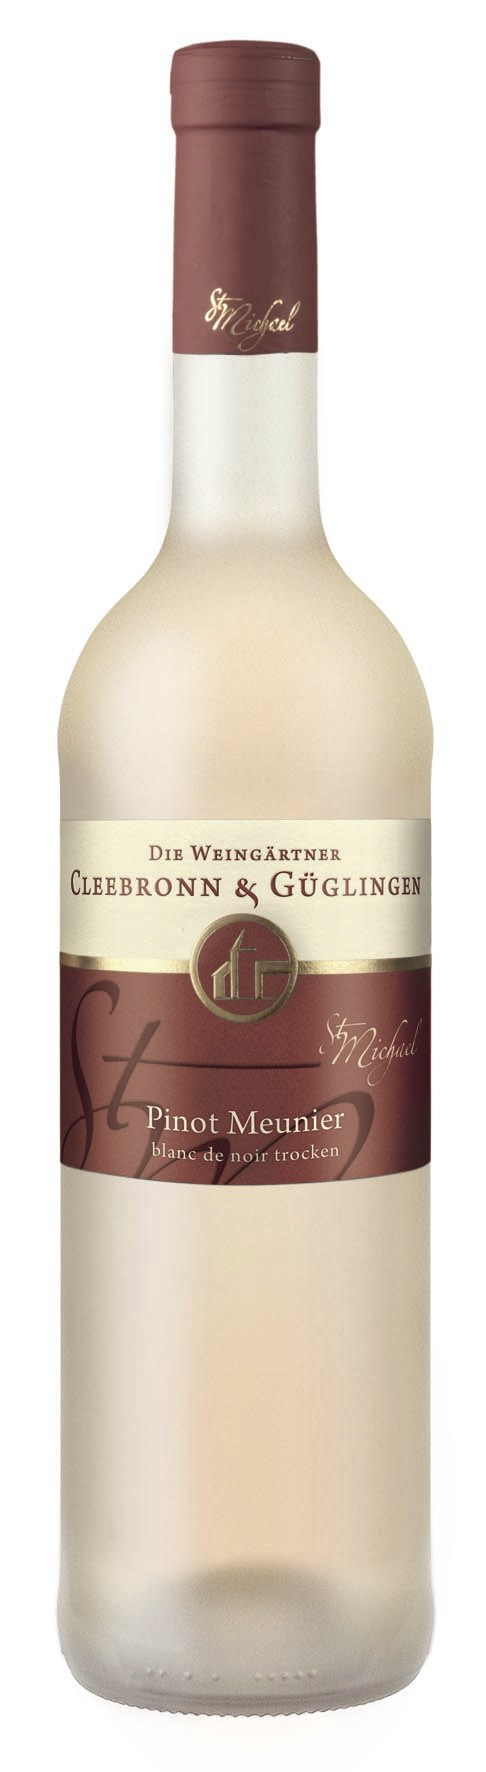 Pinot Meunier blanc de noir St. Michael 2021 QbA Cleebronn-Güglingen 0,75l.